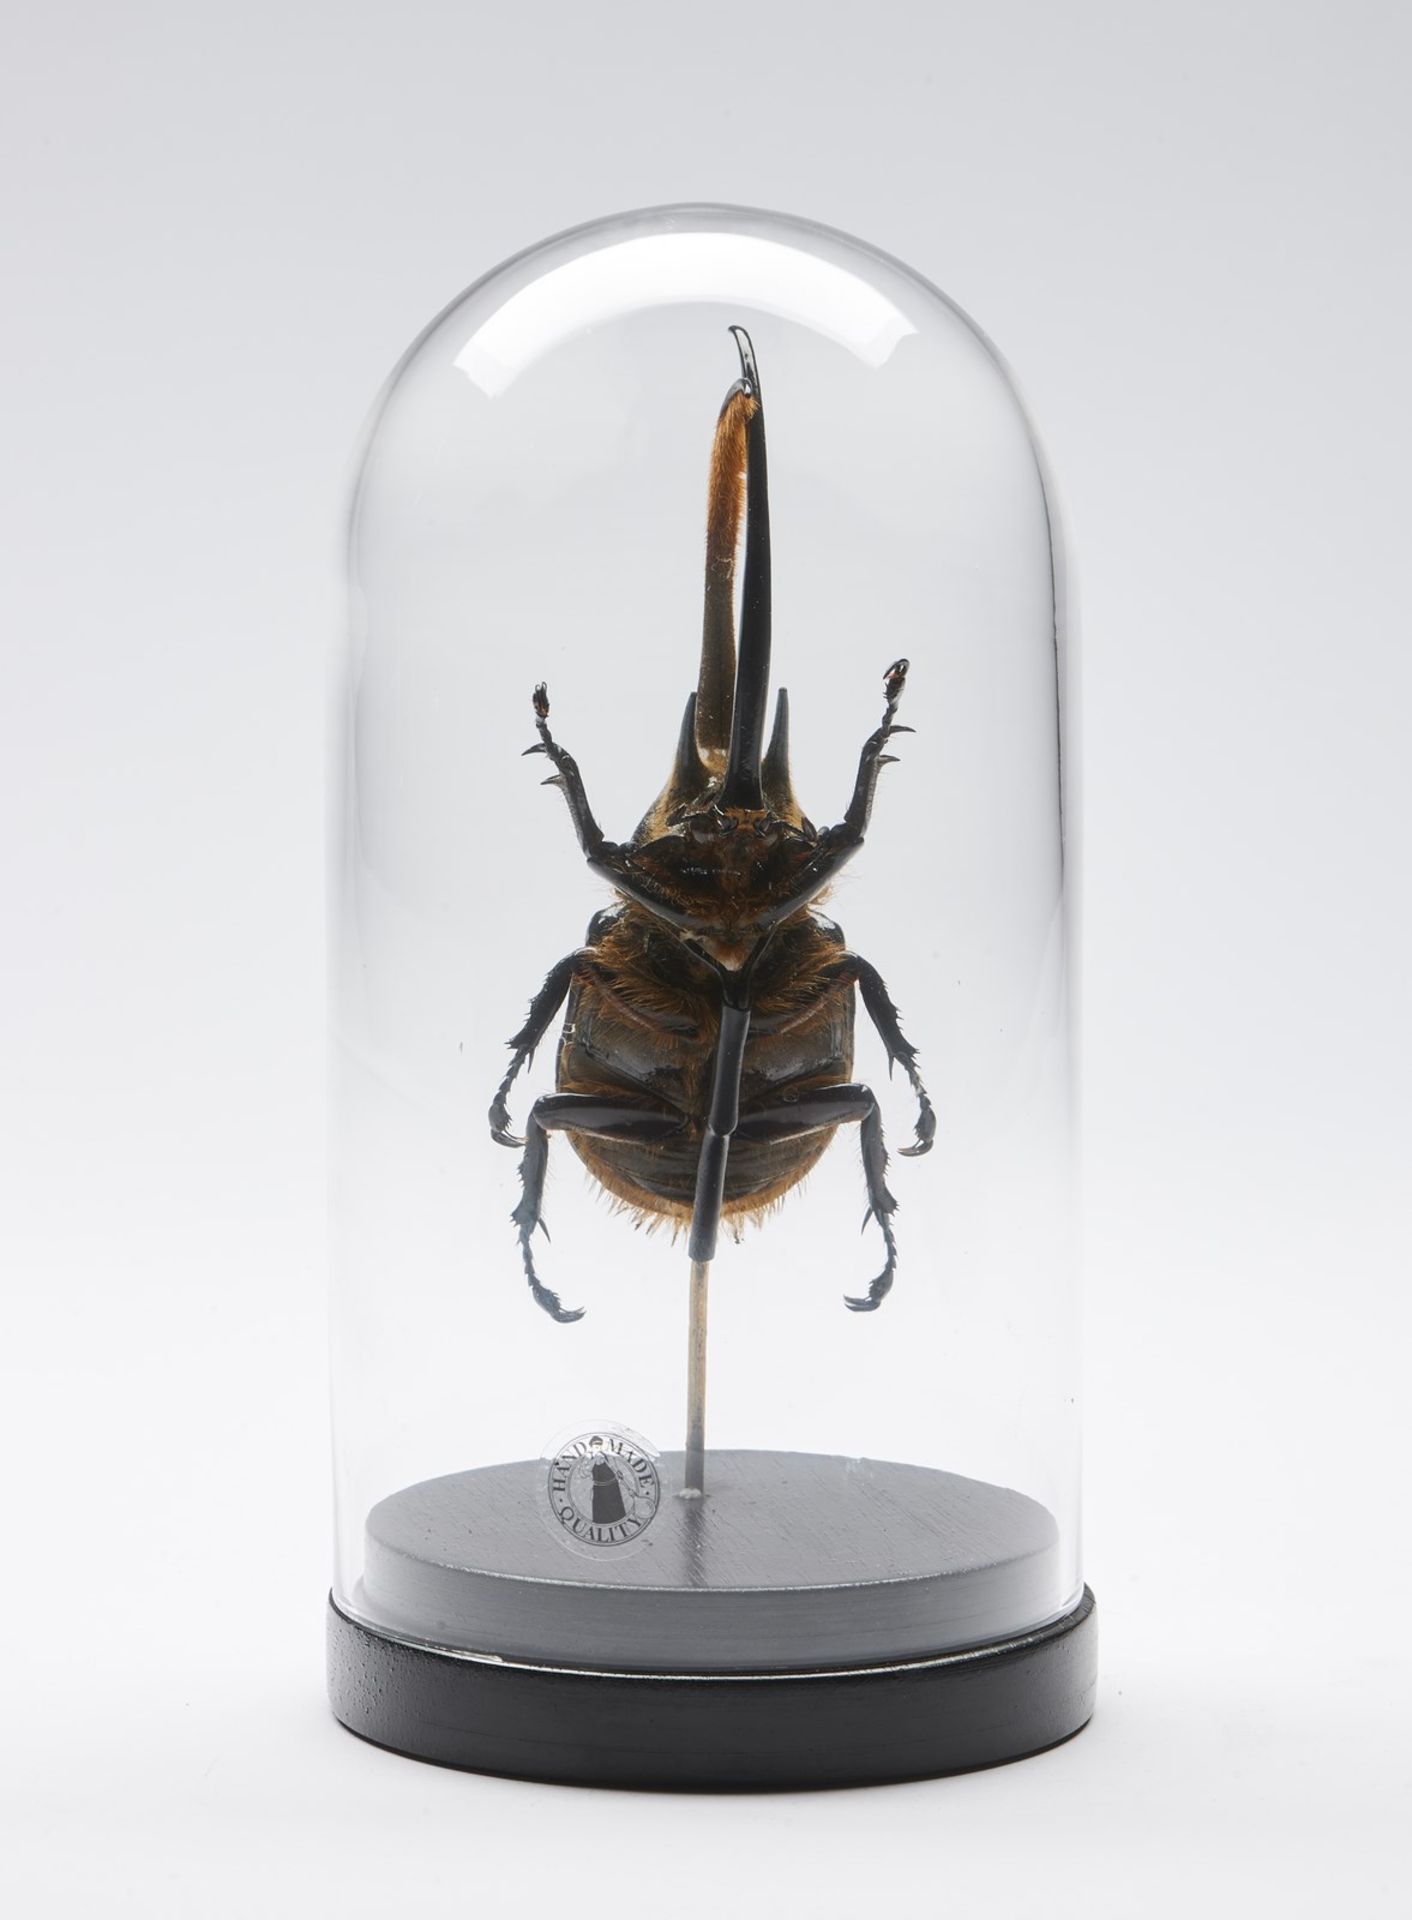 Naturalia Hercules beetle under glass bell. - Bild 3 aus 3